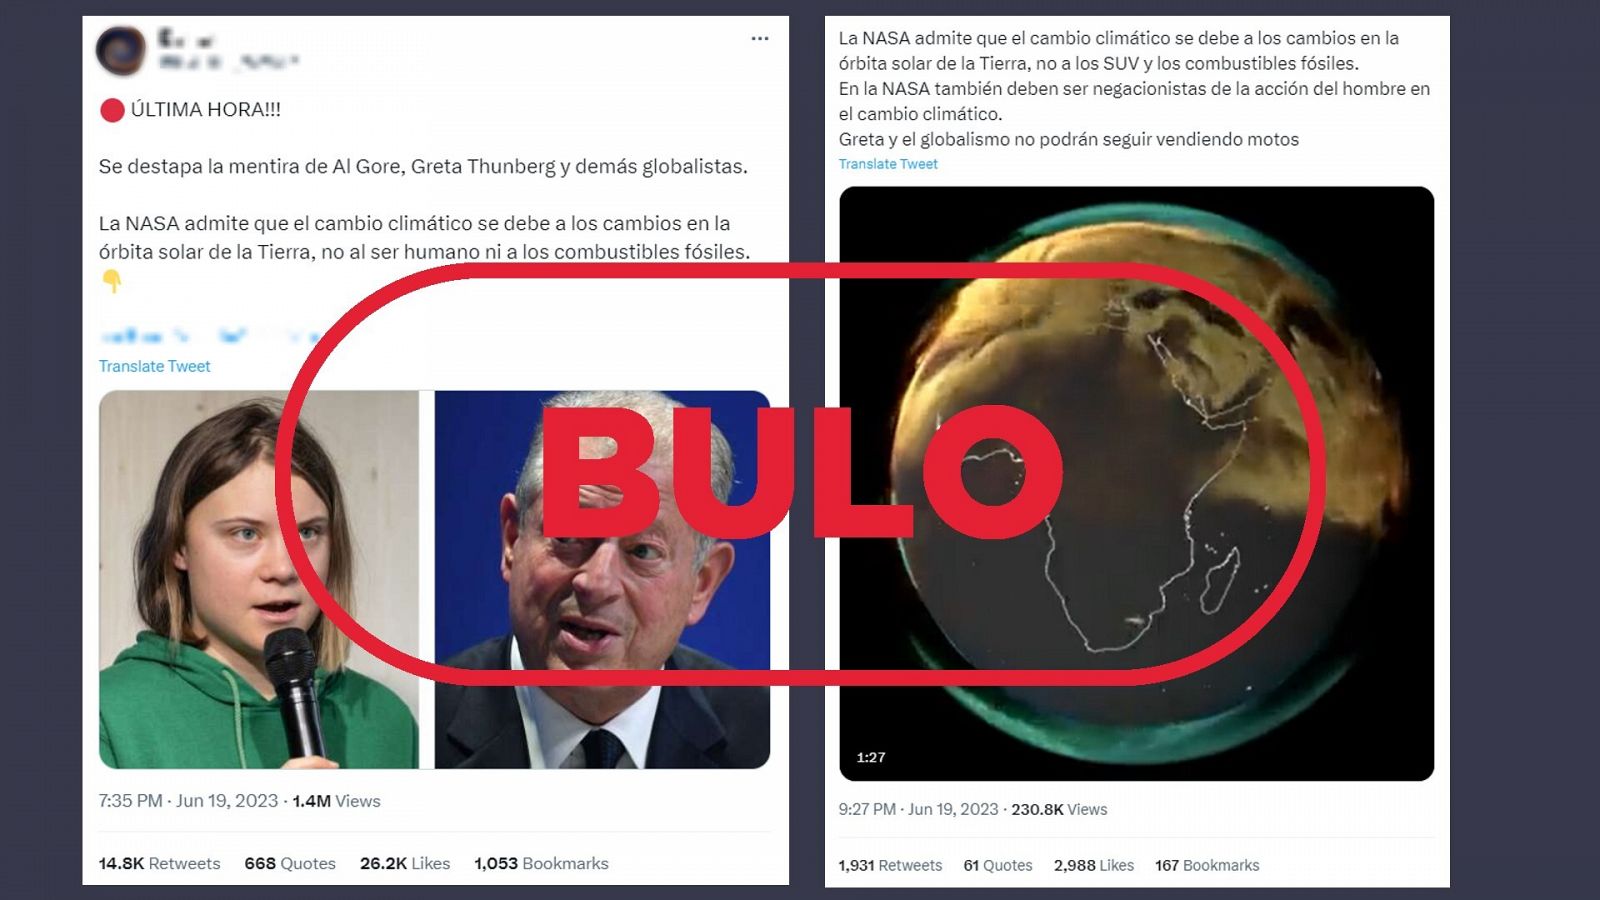 Mensajes que difunden el bulo que afirma que la NASA admite que el cambio climático no lo provoca el hombre, con el sello Bulo de VerificaRTVE en rojo